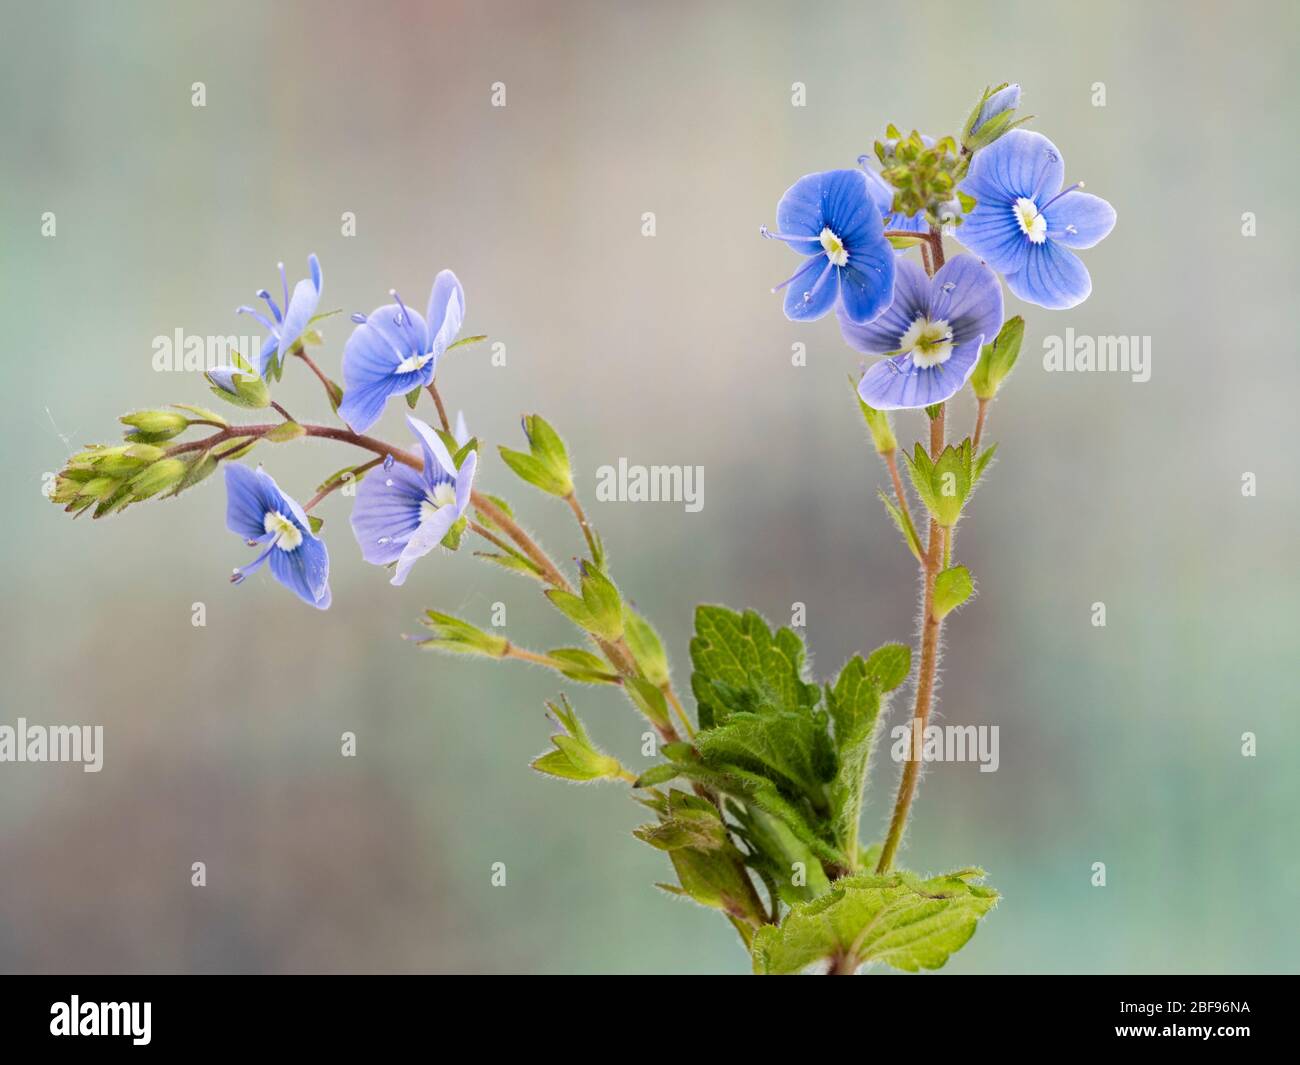 Tallo y pequeñas flores azules de la flor silvestre del Reino Unido, germander speedwell, Veronica chamaedrys Foto de stock